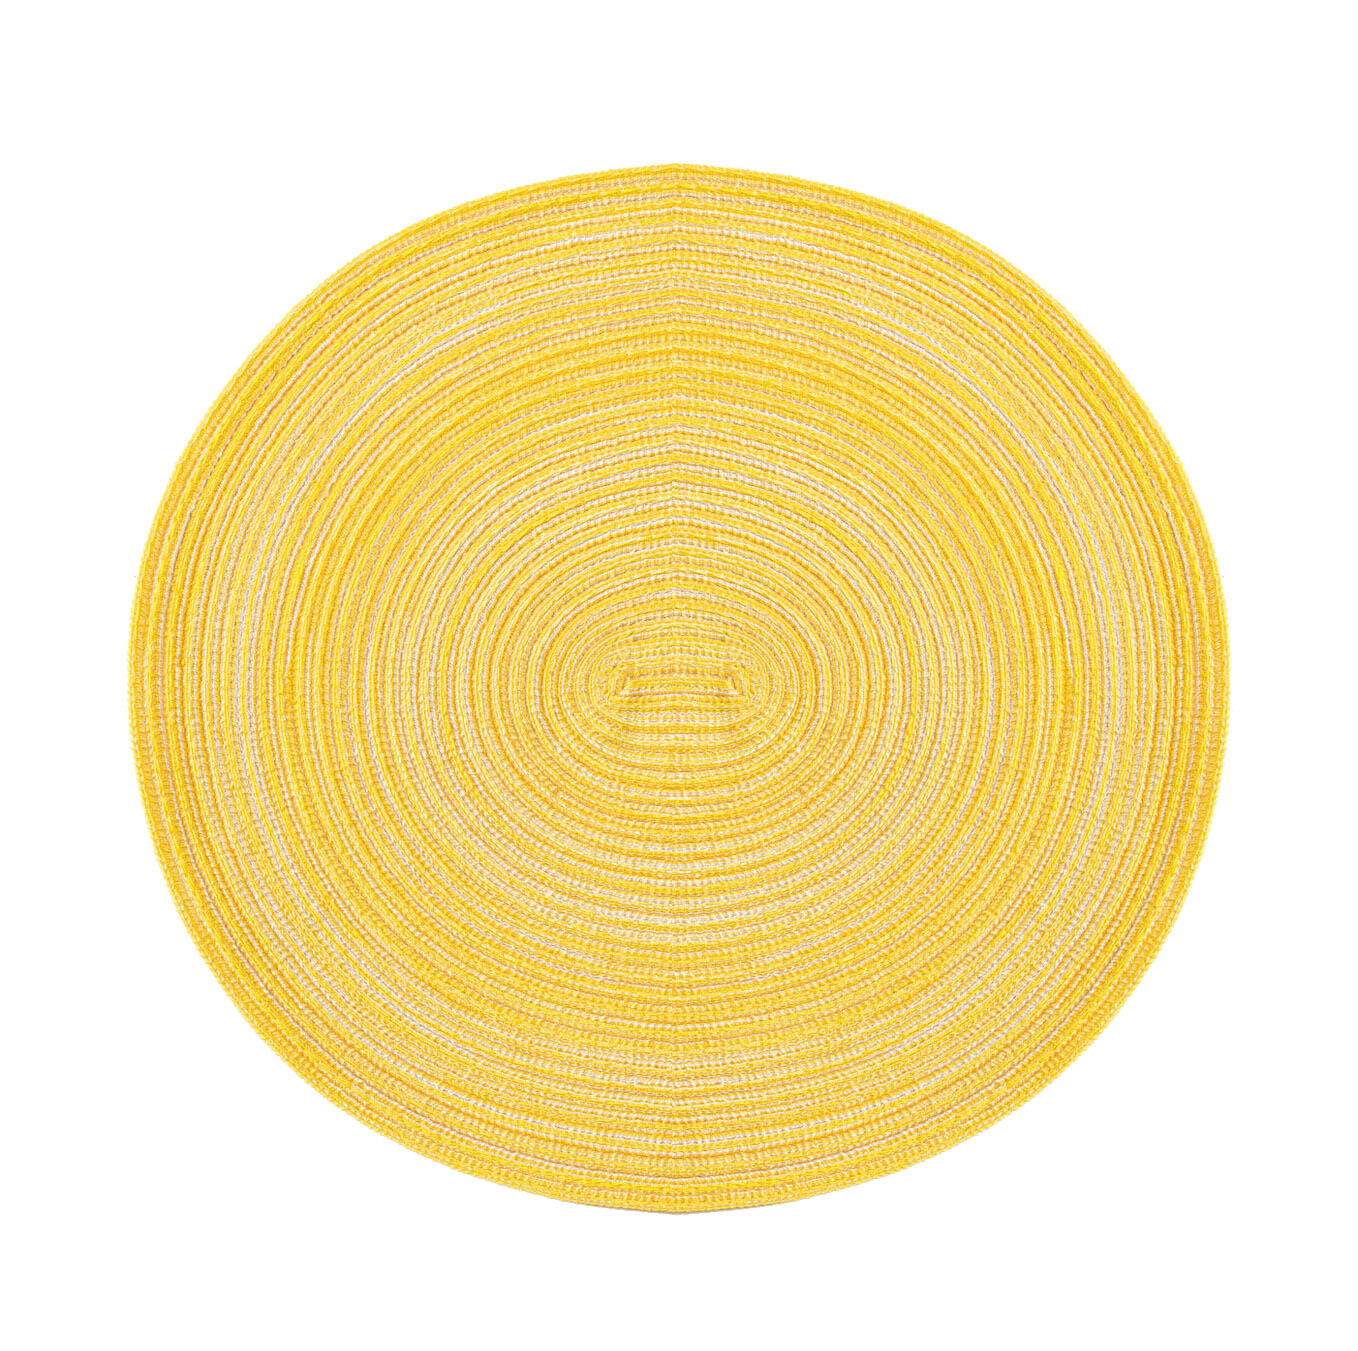 Ümmargune kollane lauamatt, pestav ja määrdumiskindel.
Apaļas formas galda paliktnis, izturīgs, veidots no pinuma.